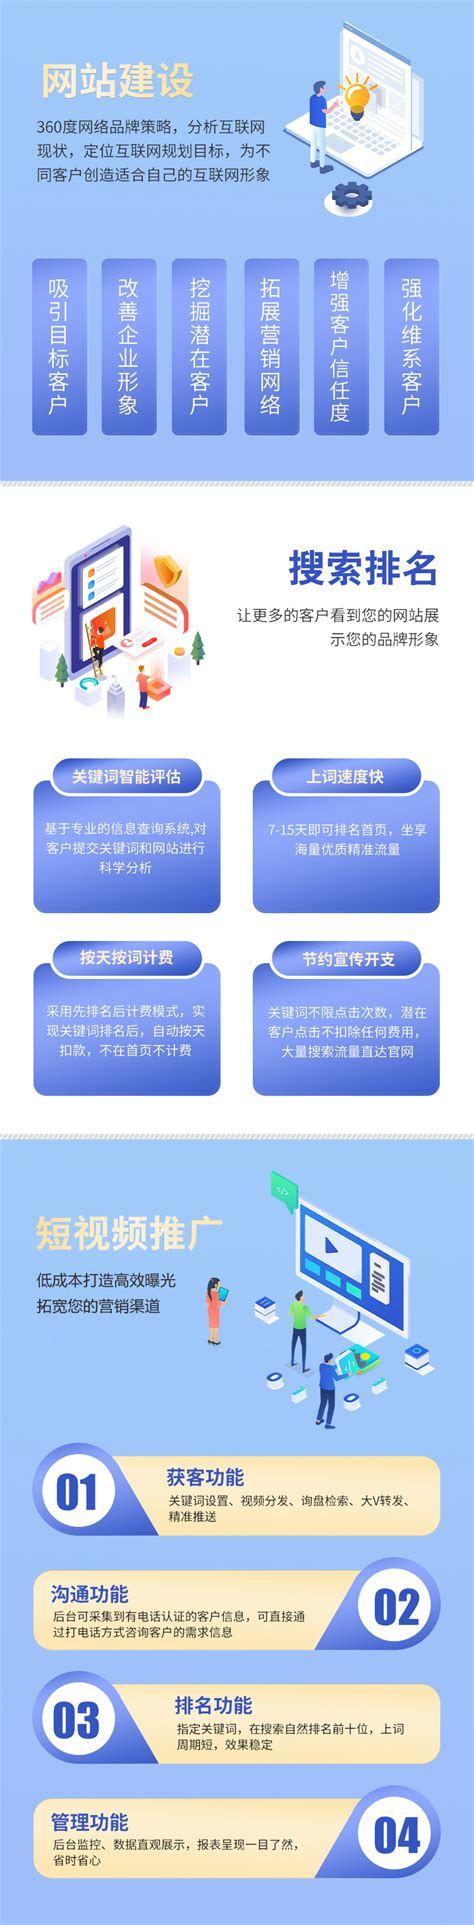 浙江网站建设的详细过程